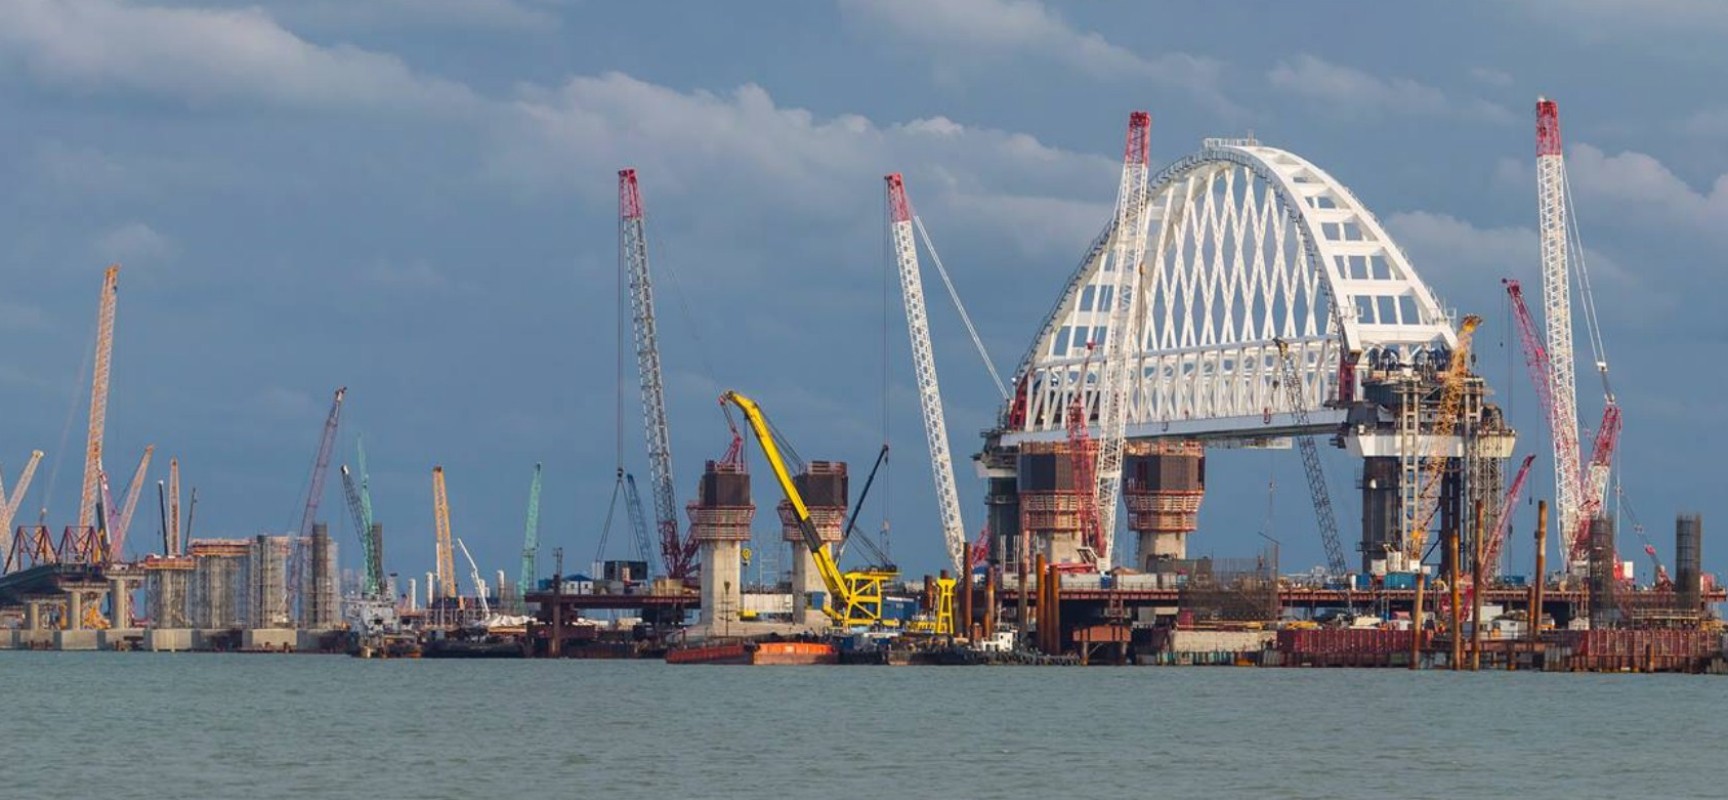 Инженерный мониторинг подтвердил 100% точности установки железнодорожной арки моста через Керченский пролив